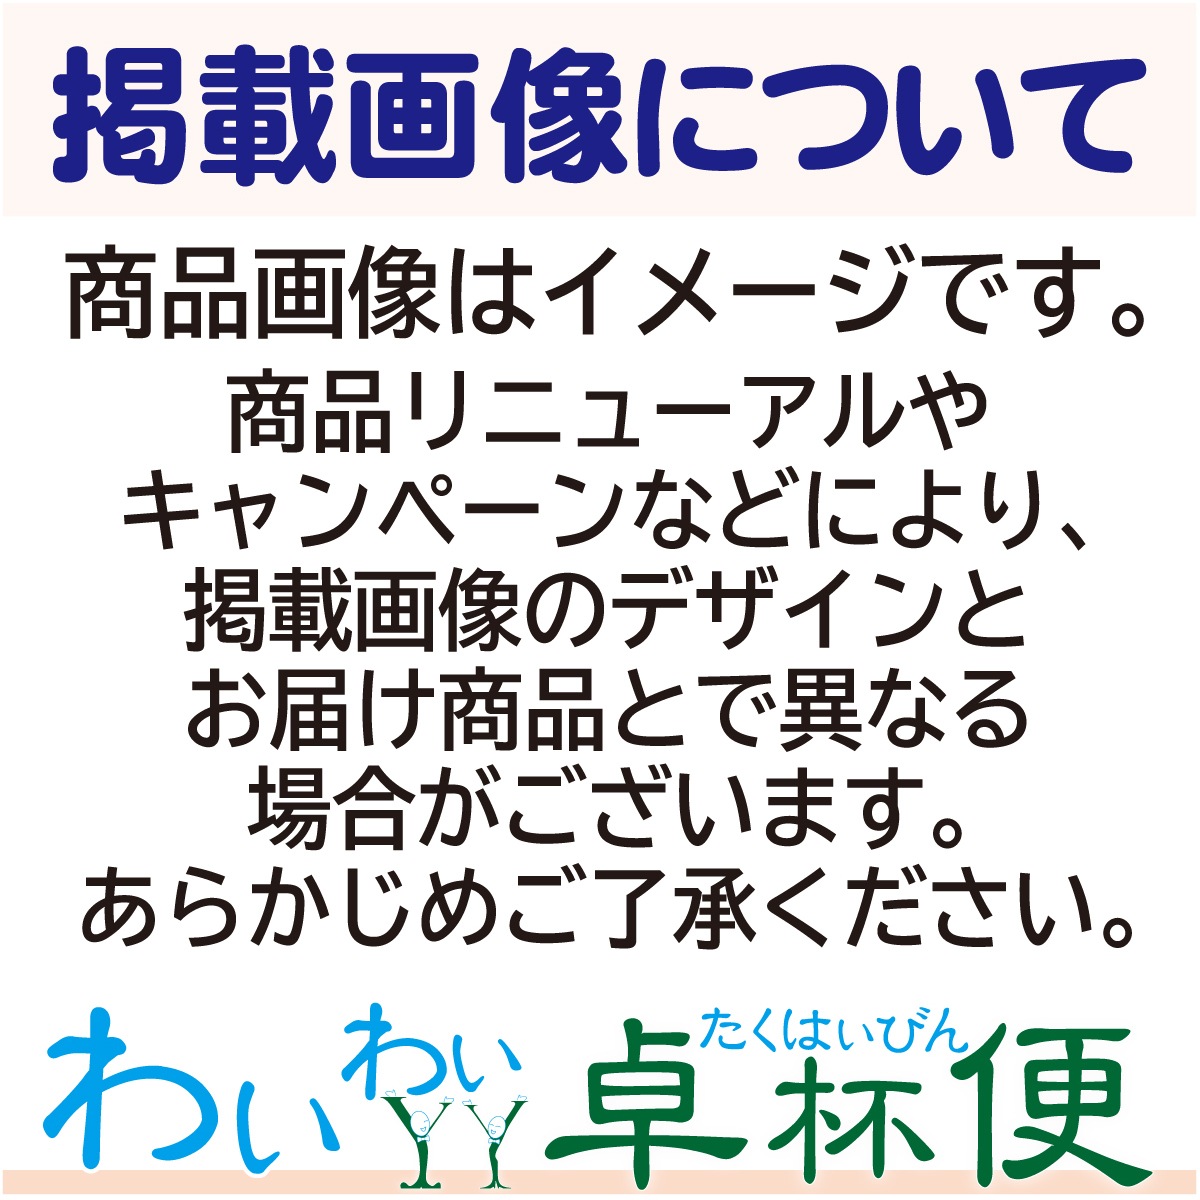  Asahi стиль свободный сырой 350ml жестяная банка 24шт.@×2 кейс (48шт.@) бесплатная доставка ( часть регион за исключением )